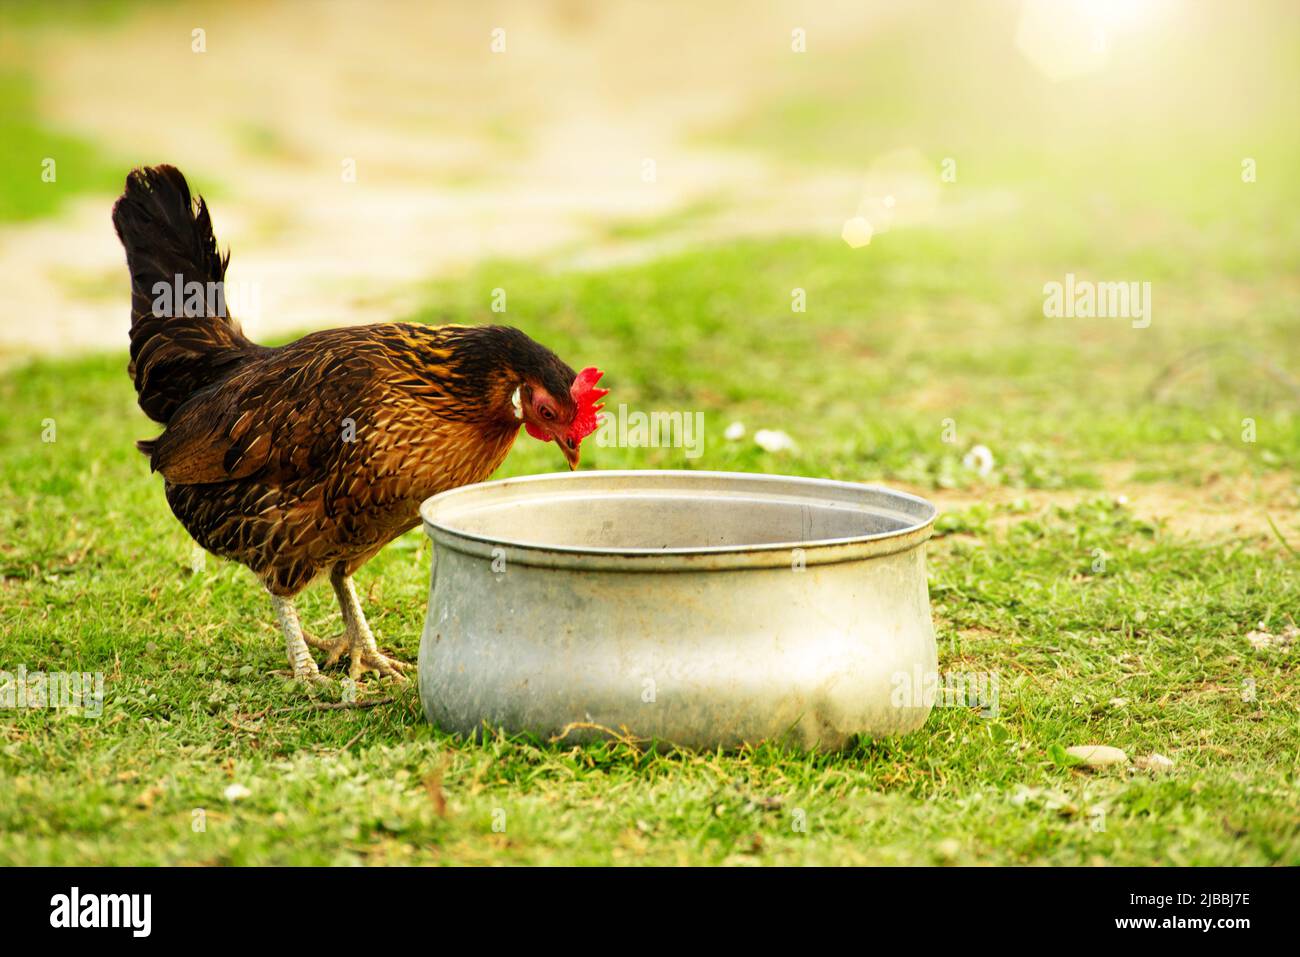 A hen grazing on green backyard grass Stock Photo